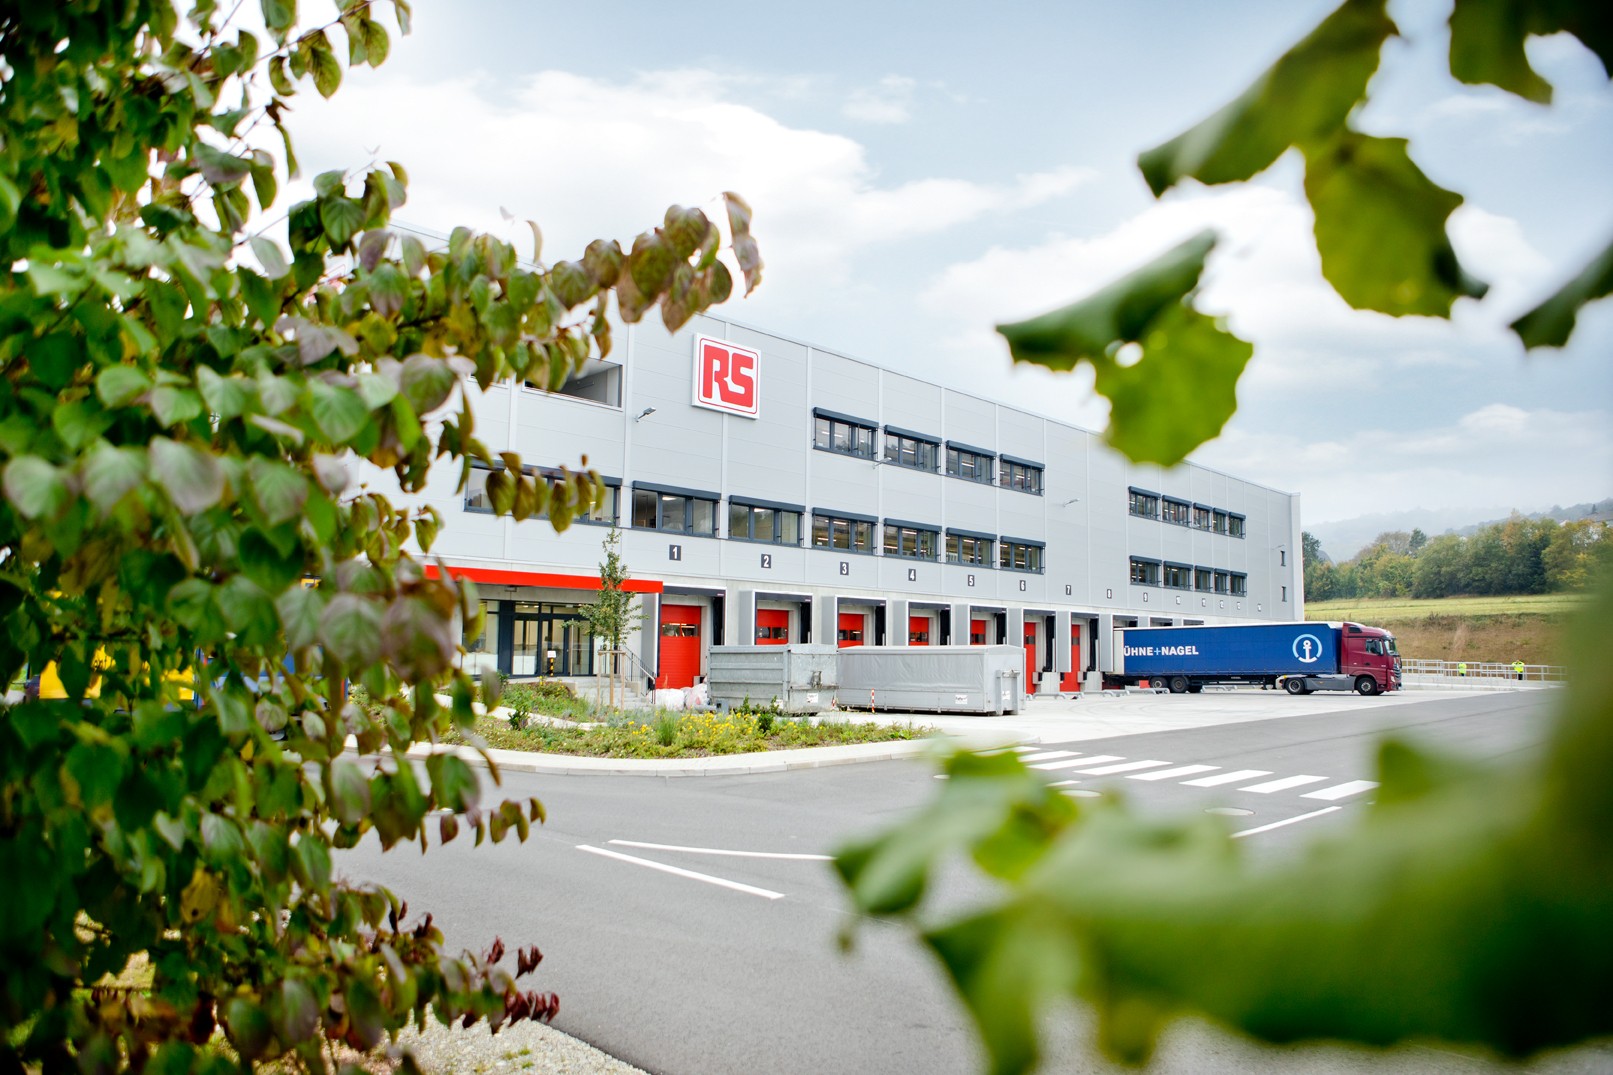 Magazijn van RS in Bad Hersfeld in Duitsland met vrachtwagen geparkeerd voor het gebouw.